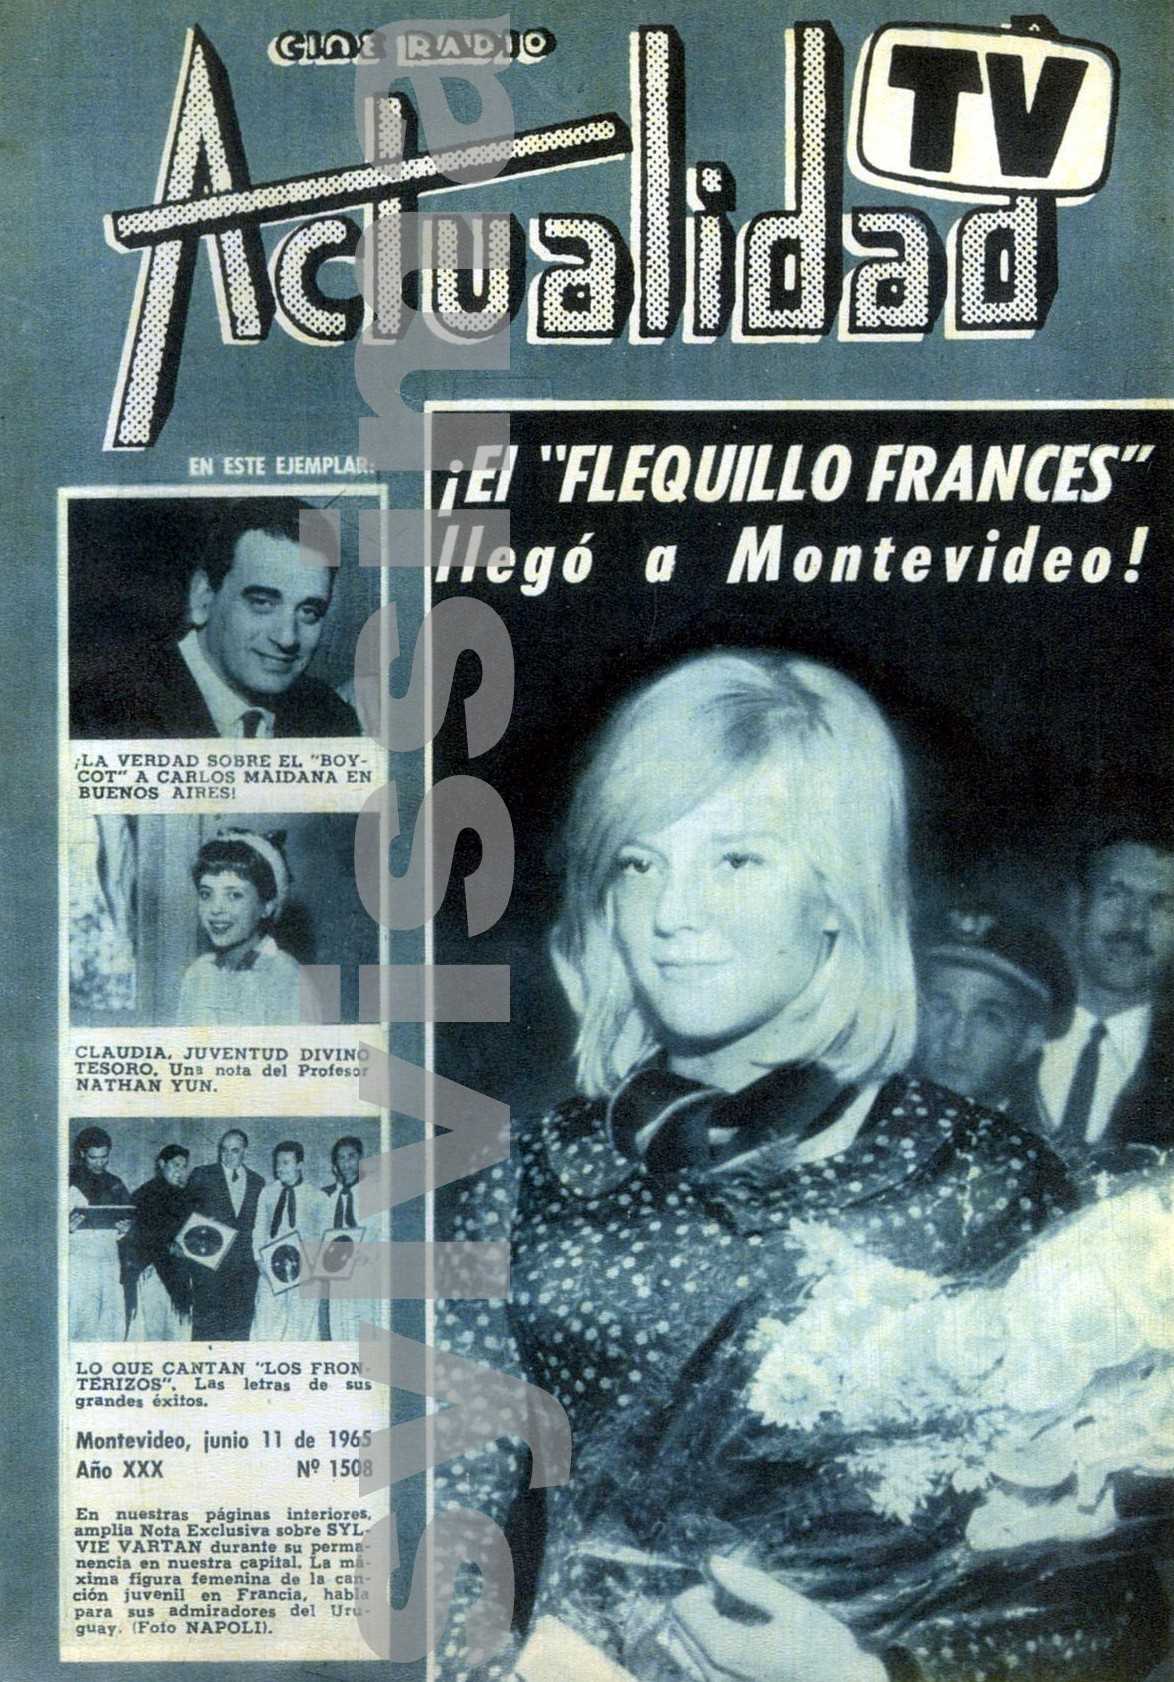 Magazine Actualidad Uruguay "Sylvie Vartan el flequillo frances" 1965, Cover